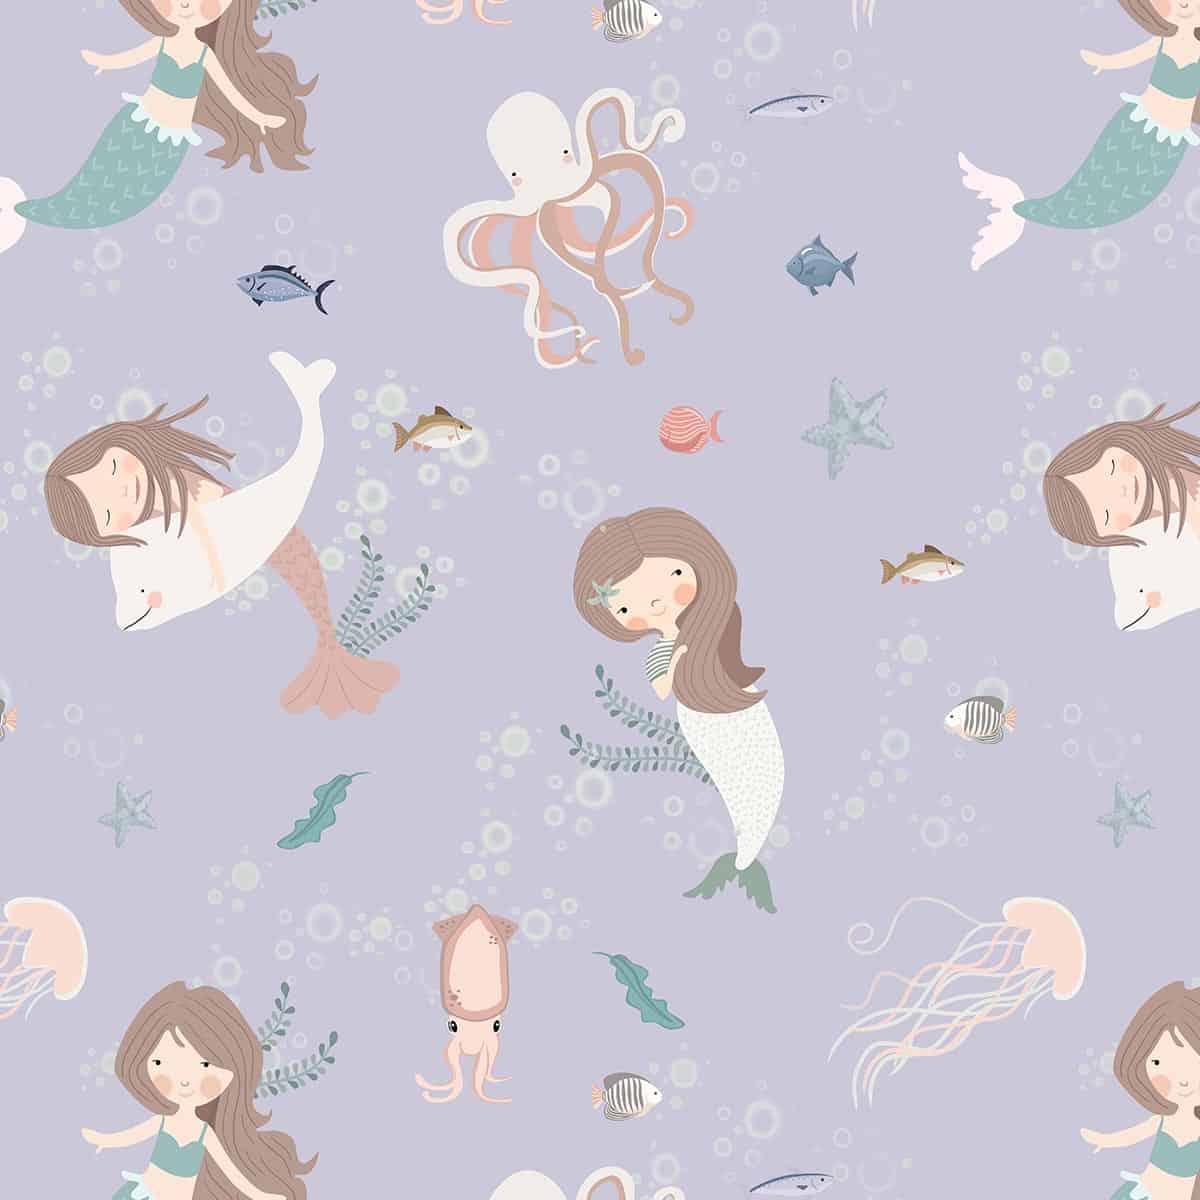 Mermaid Melodies: Underwater Adventure, Wallpaper For Kids, Lilac